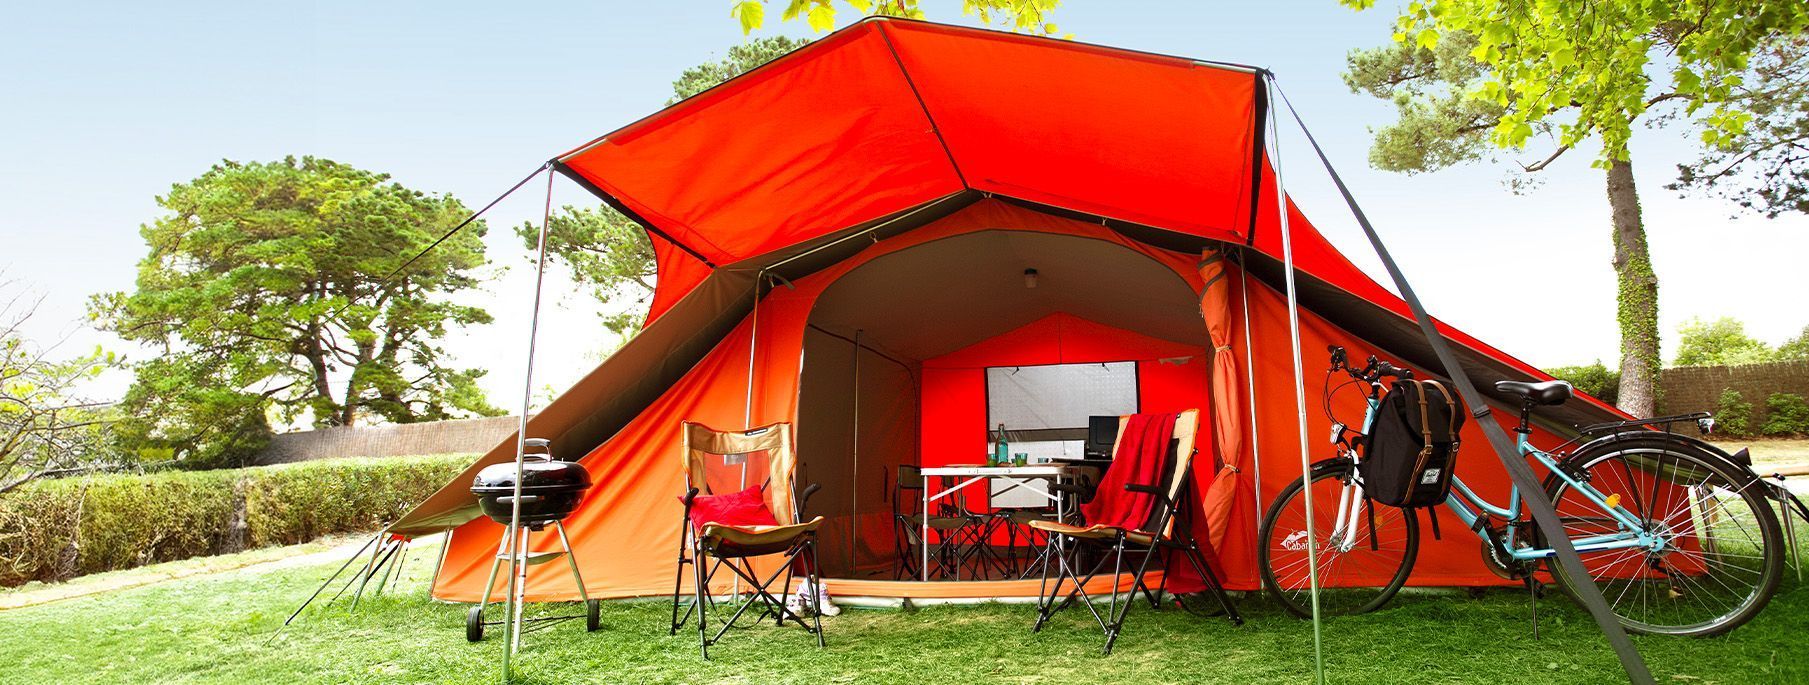 Location de tente de camping équipée Ready to camp